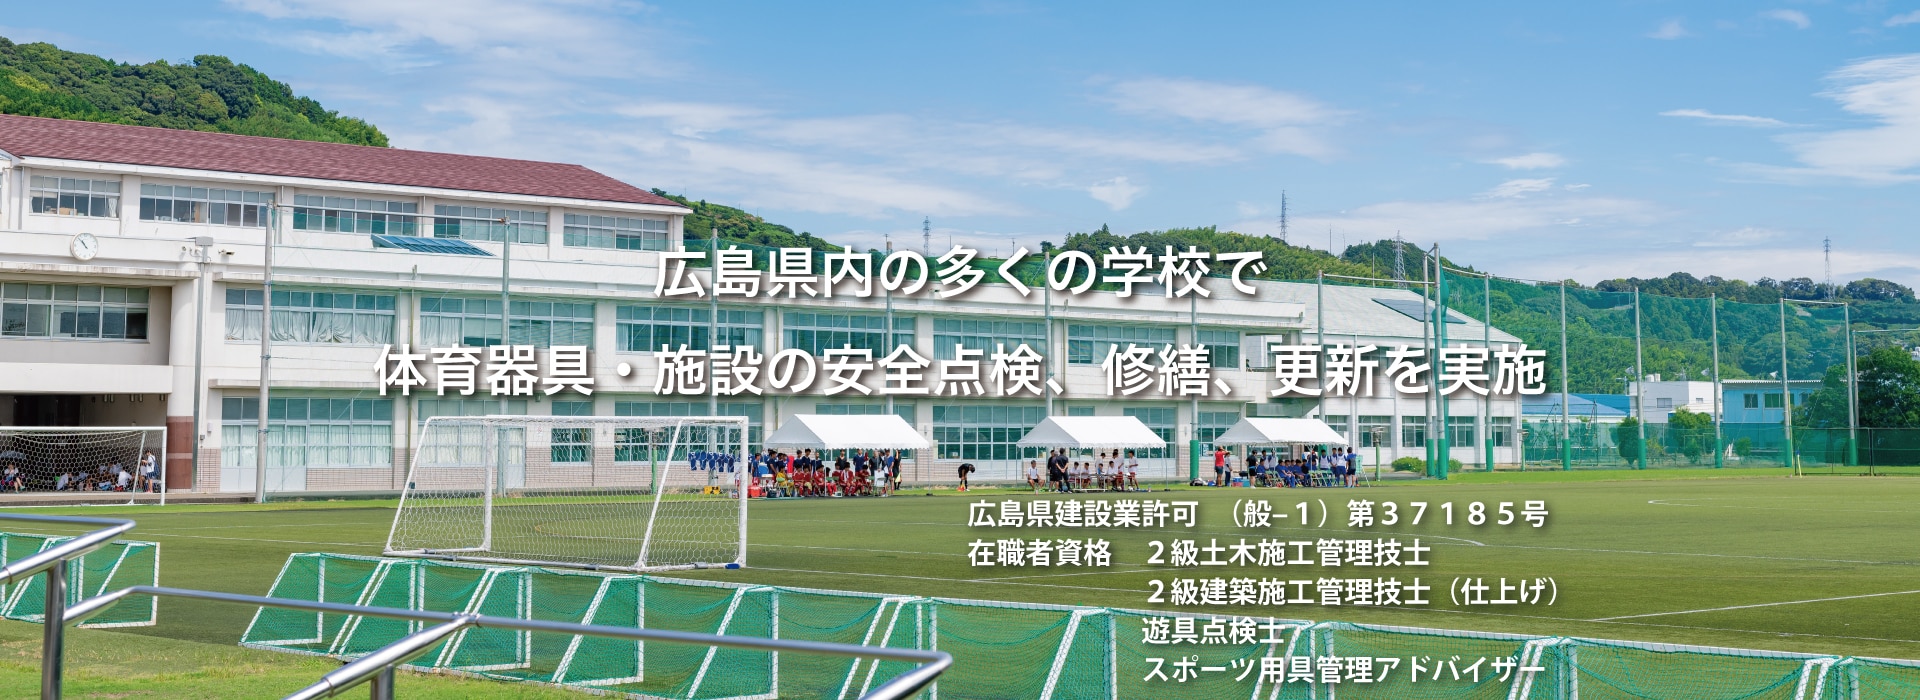 広島県内多くの学校で体育器具・施設の安全点検、修繕、更新を実施